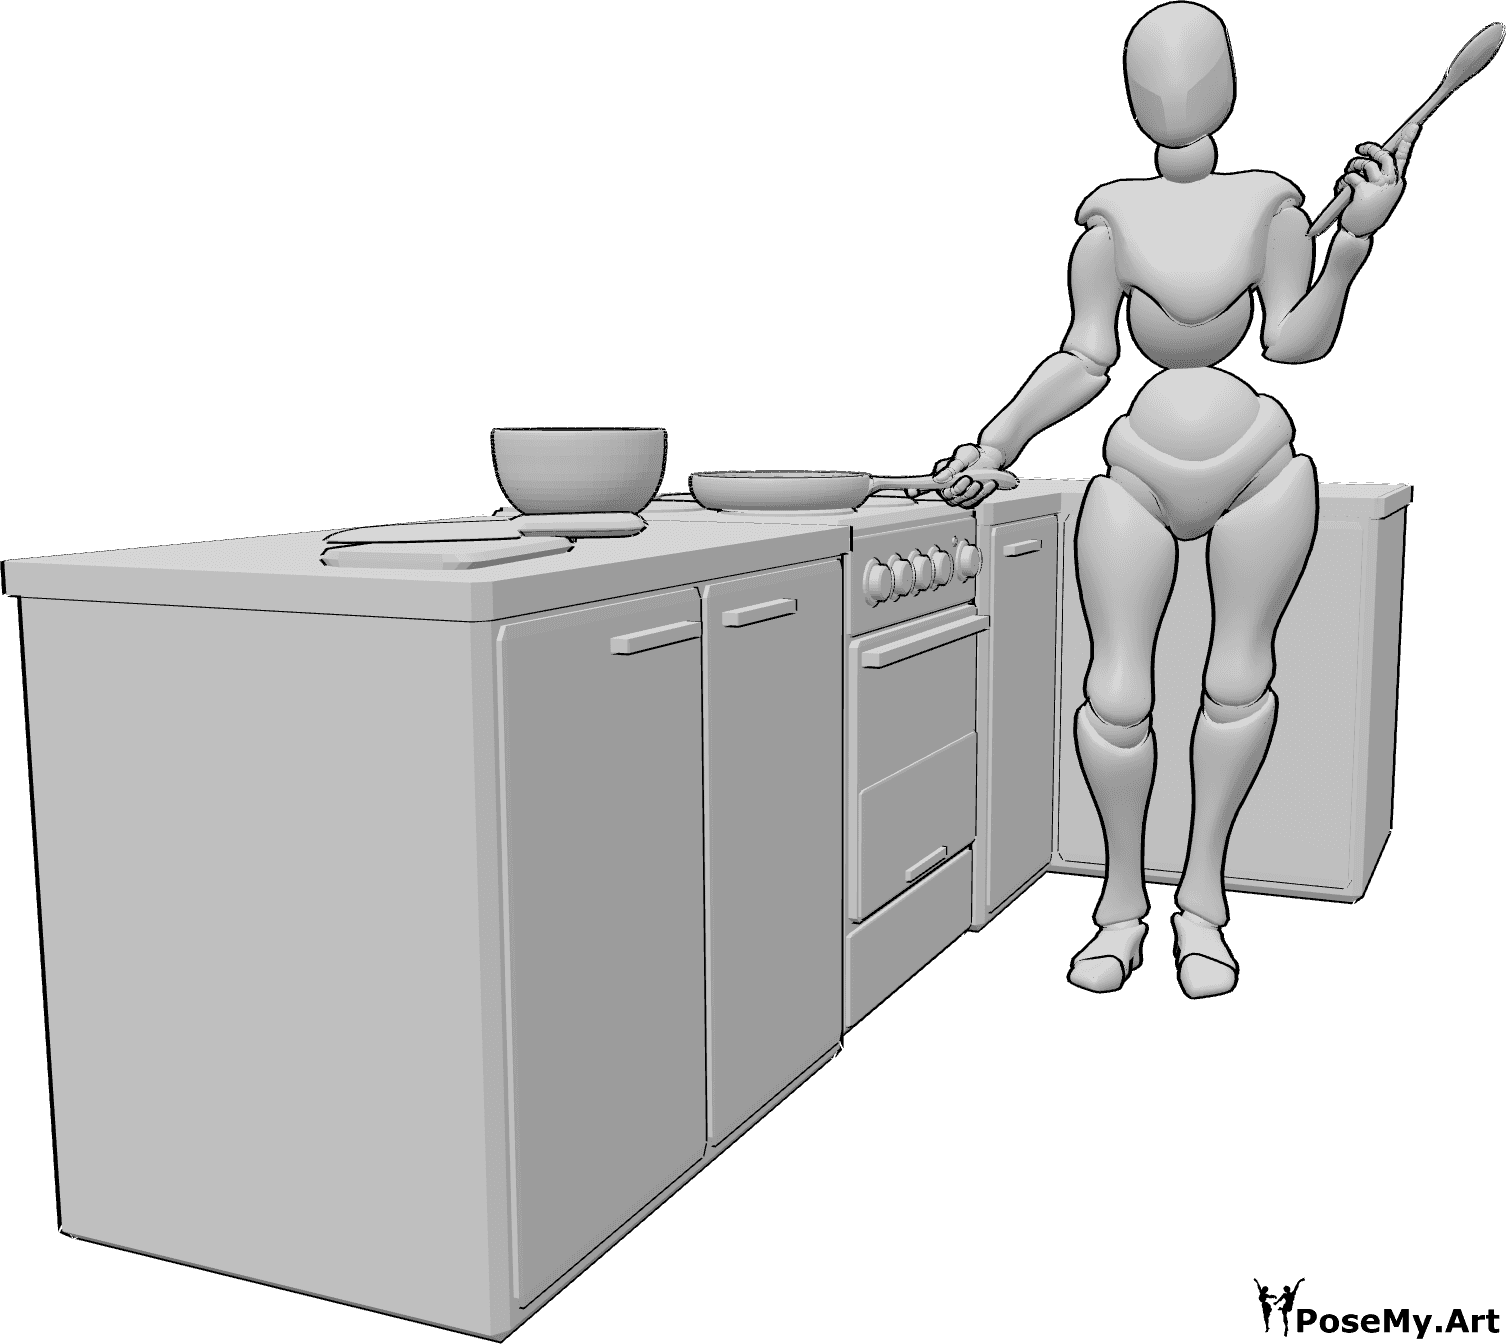 Référence des poses- Cuisiner en tenant une cuillère - Femme debout dans la cuisine, tenant une casserole dans sa main droite et une cuillère en bois dans sa main gauche.